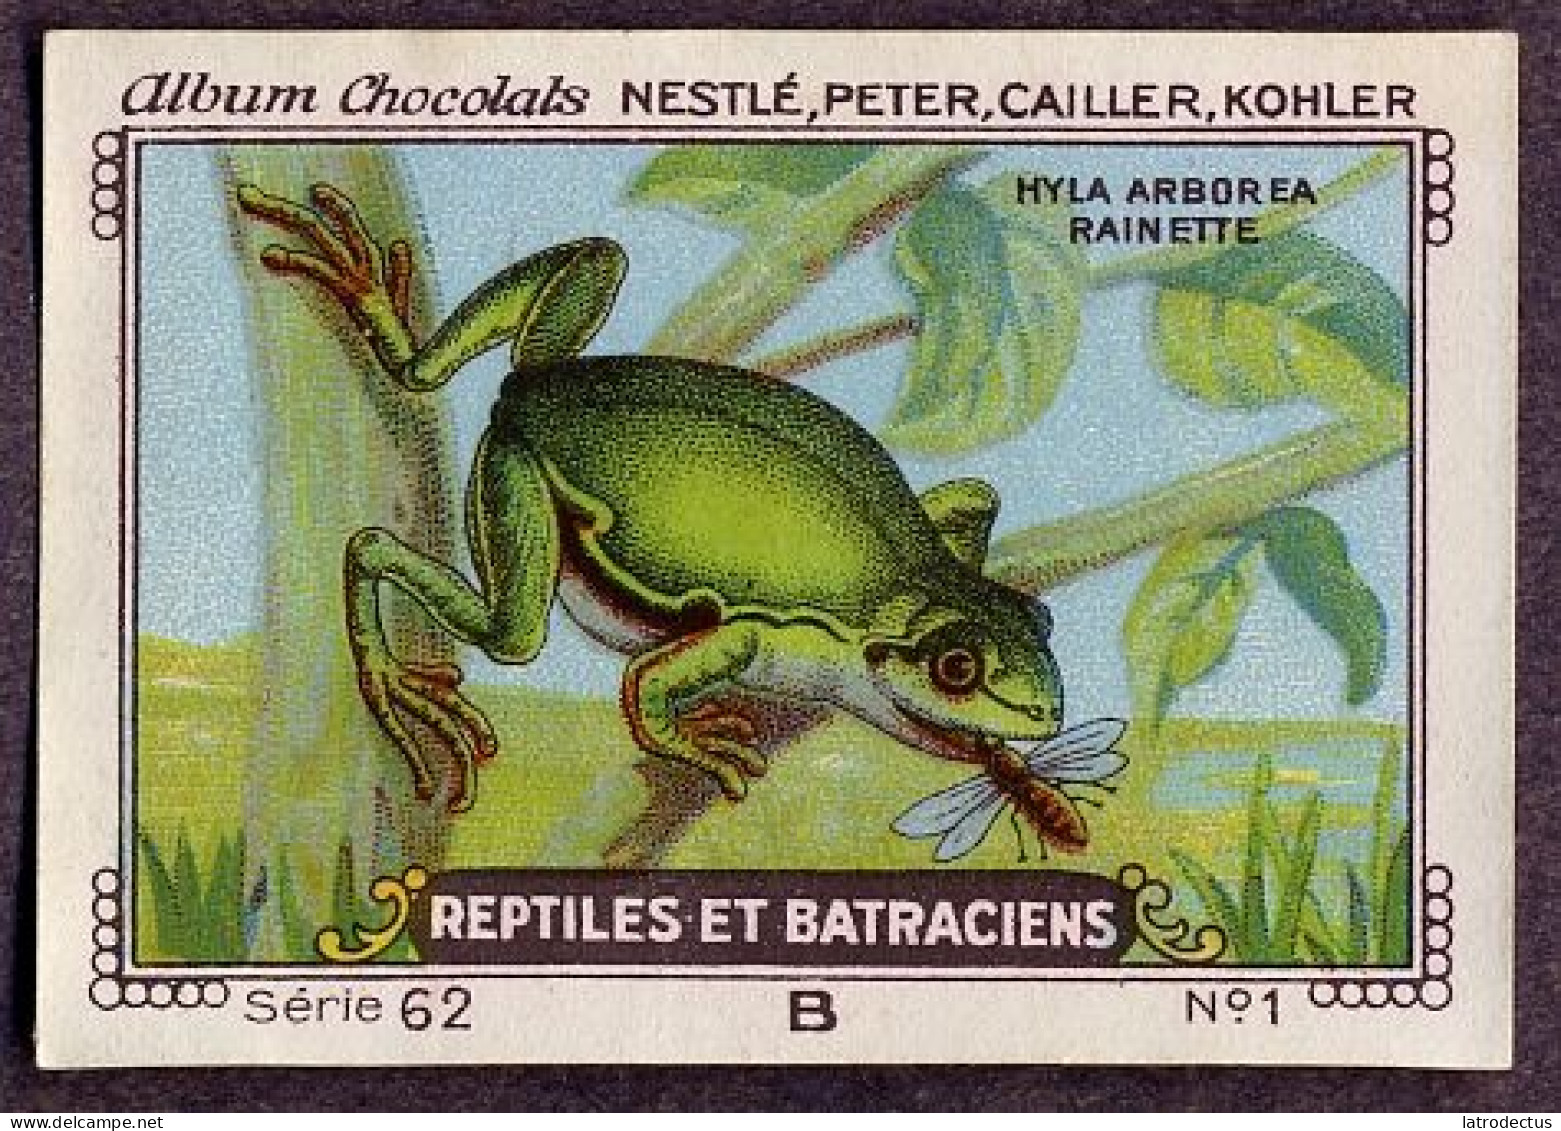 Nestlé - 62B - Reptiles Et Batraciens, Reptiles And Amphibians - 1 - Hyla Arborea, Tree Frog, Rainette Verte - Nestlé